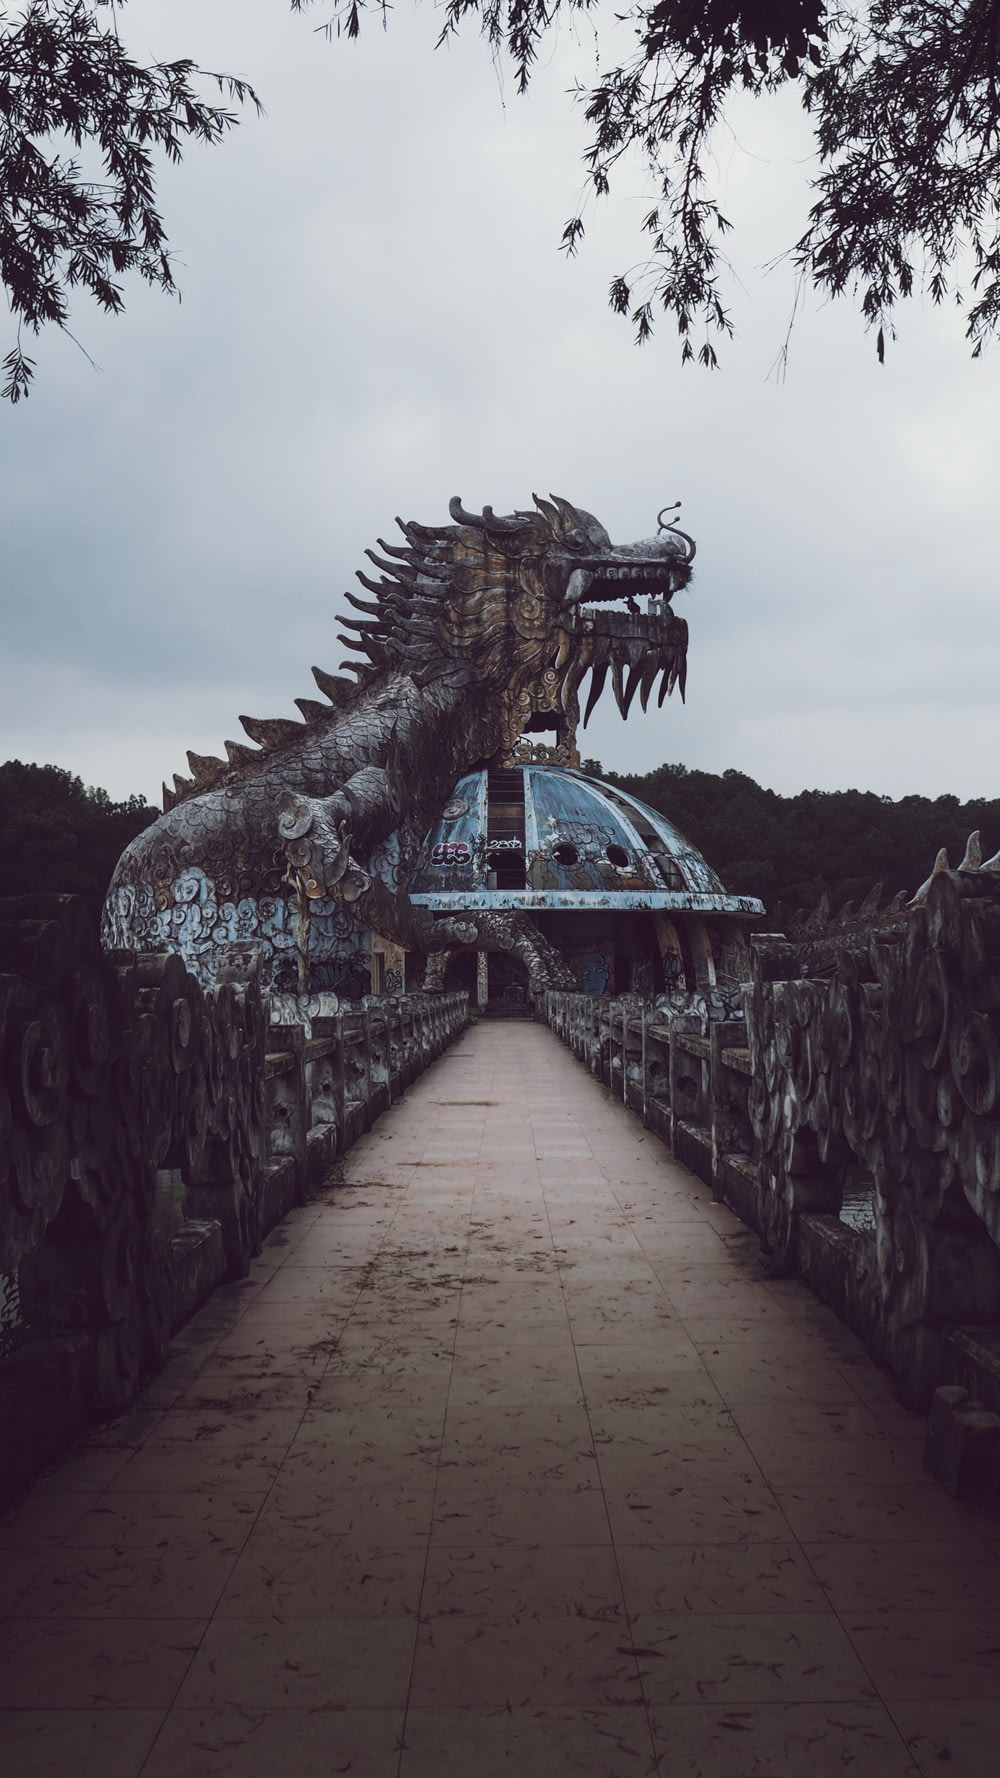 foto di messa a fuoco superficiale della statua del drago